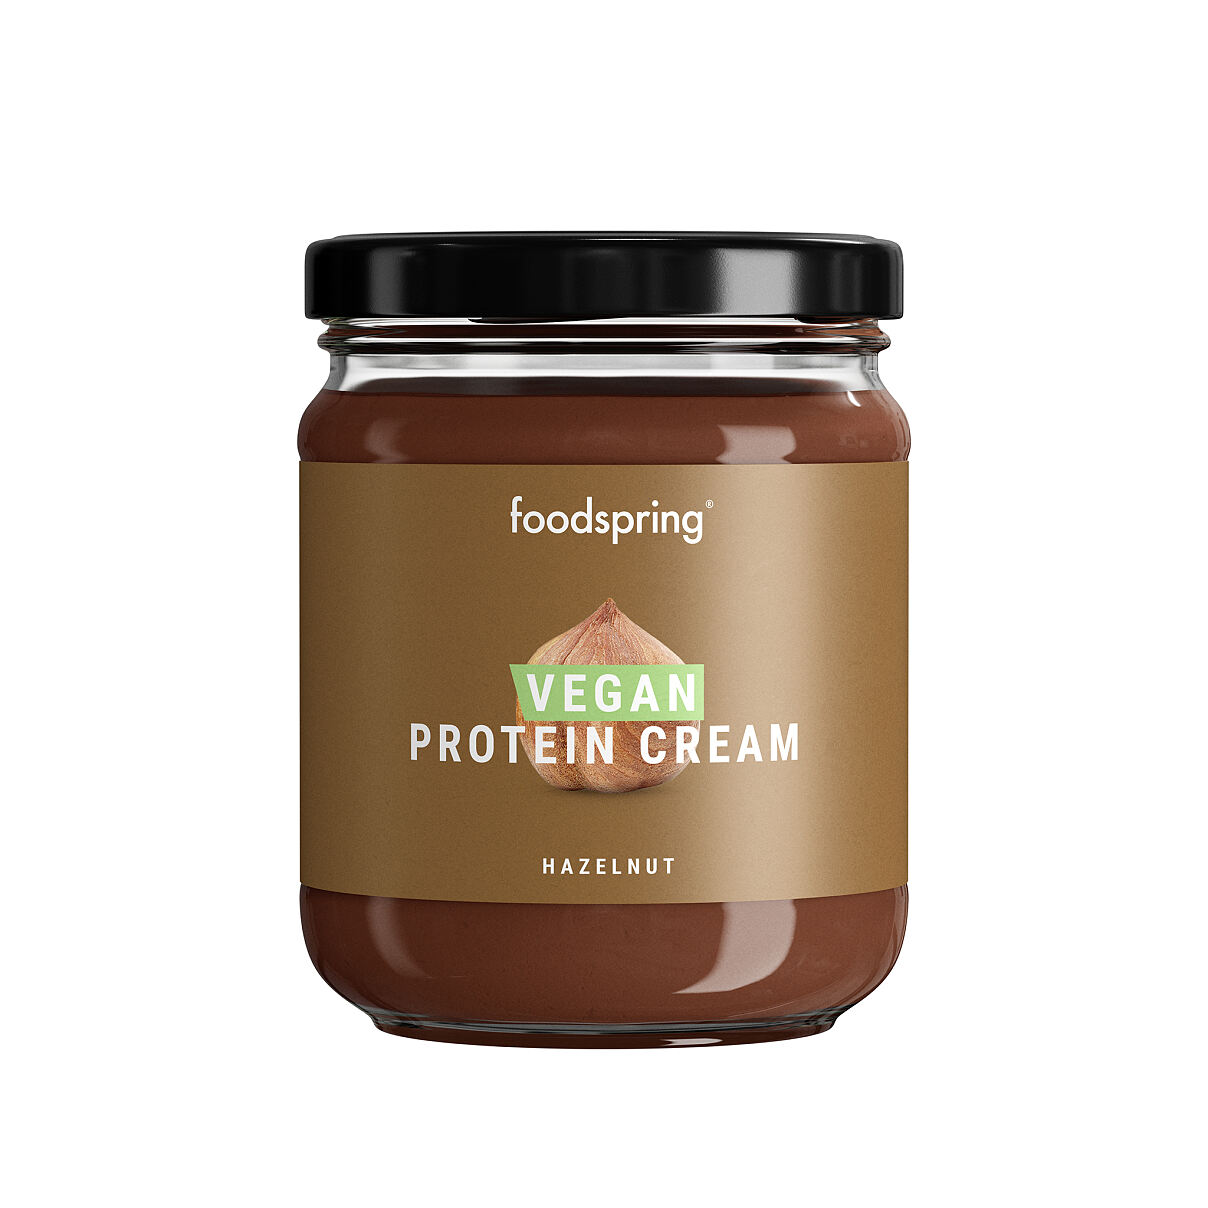 foodspring_Vegan Protein Cream_Hazelnut_EUR 5,99